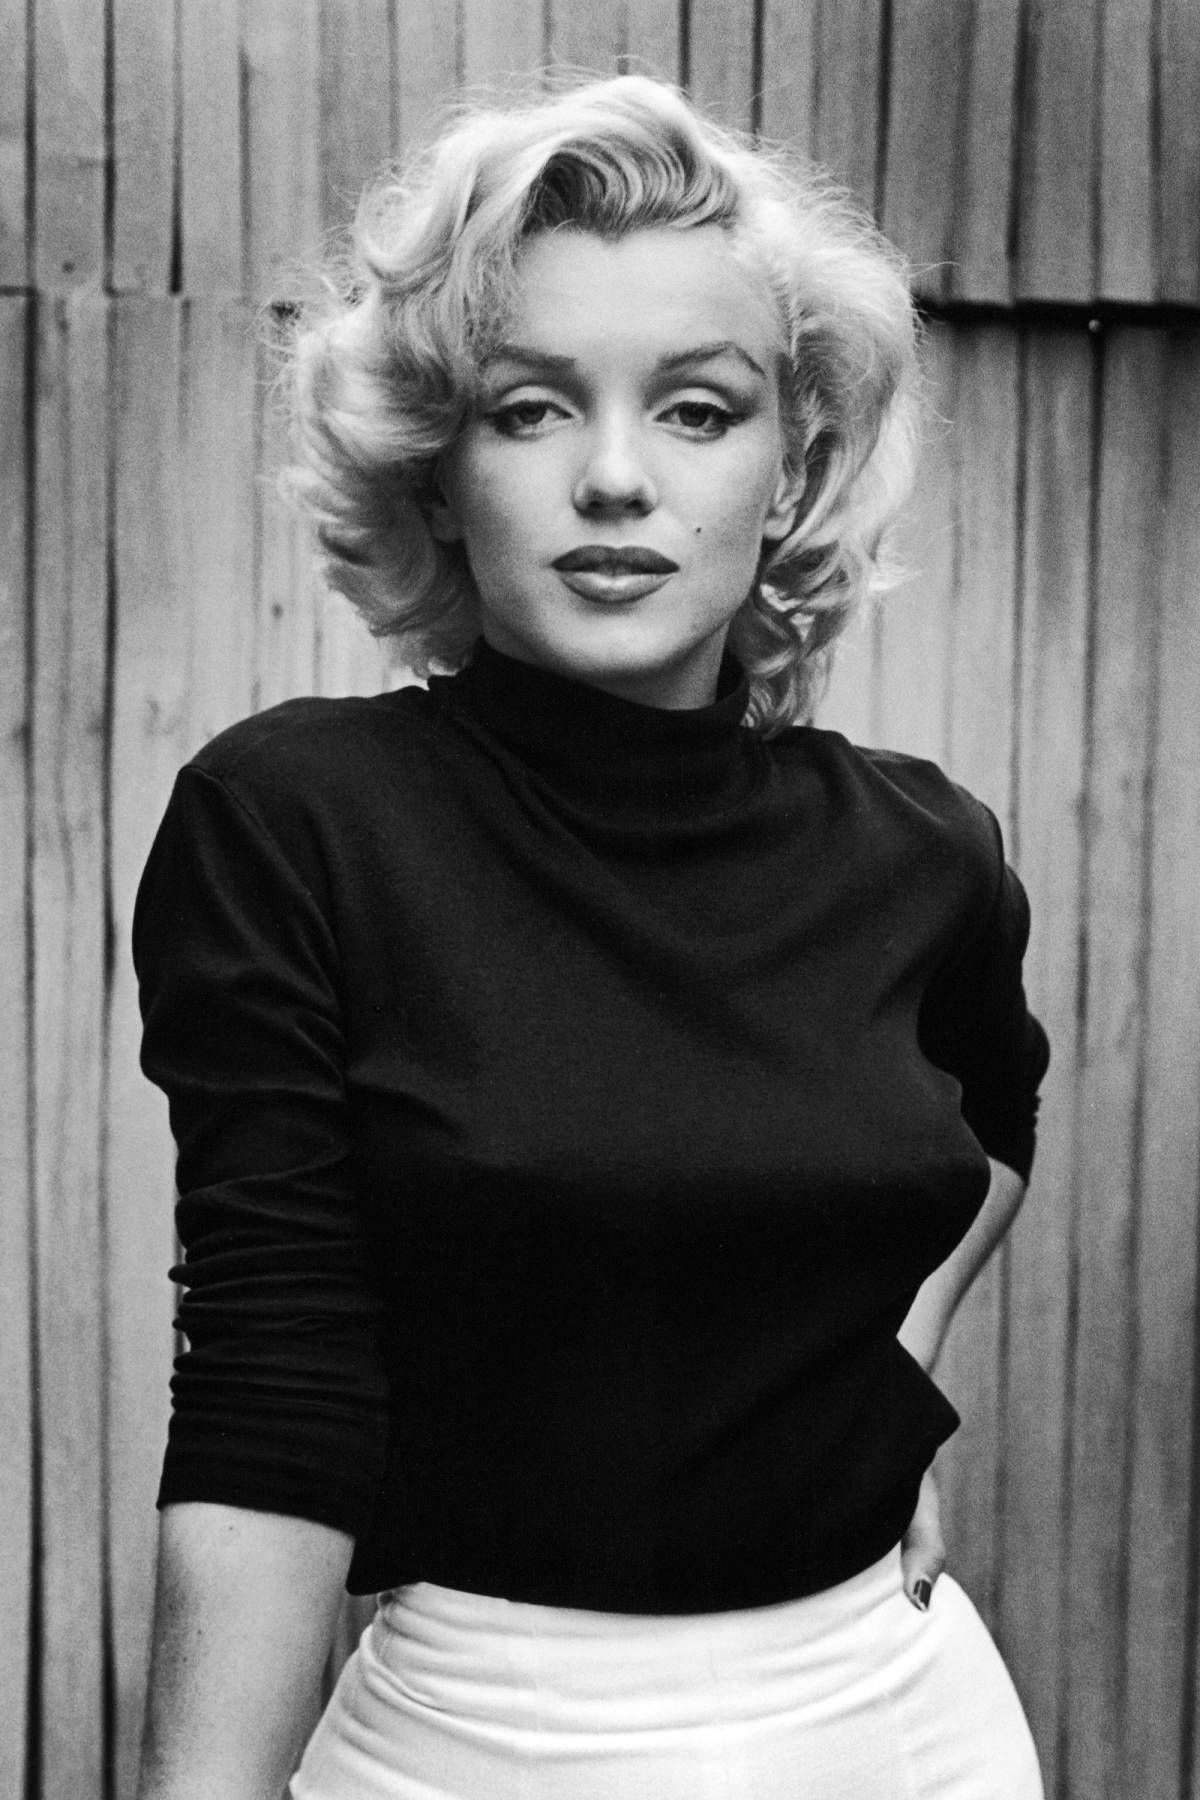 Imágenes de Marilyn Monroe, fondos de pantalla de Marilyn Monroe compatibles con dispositivos móviles